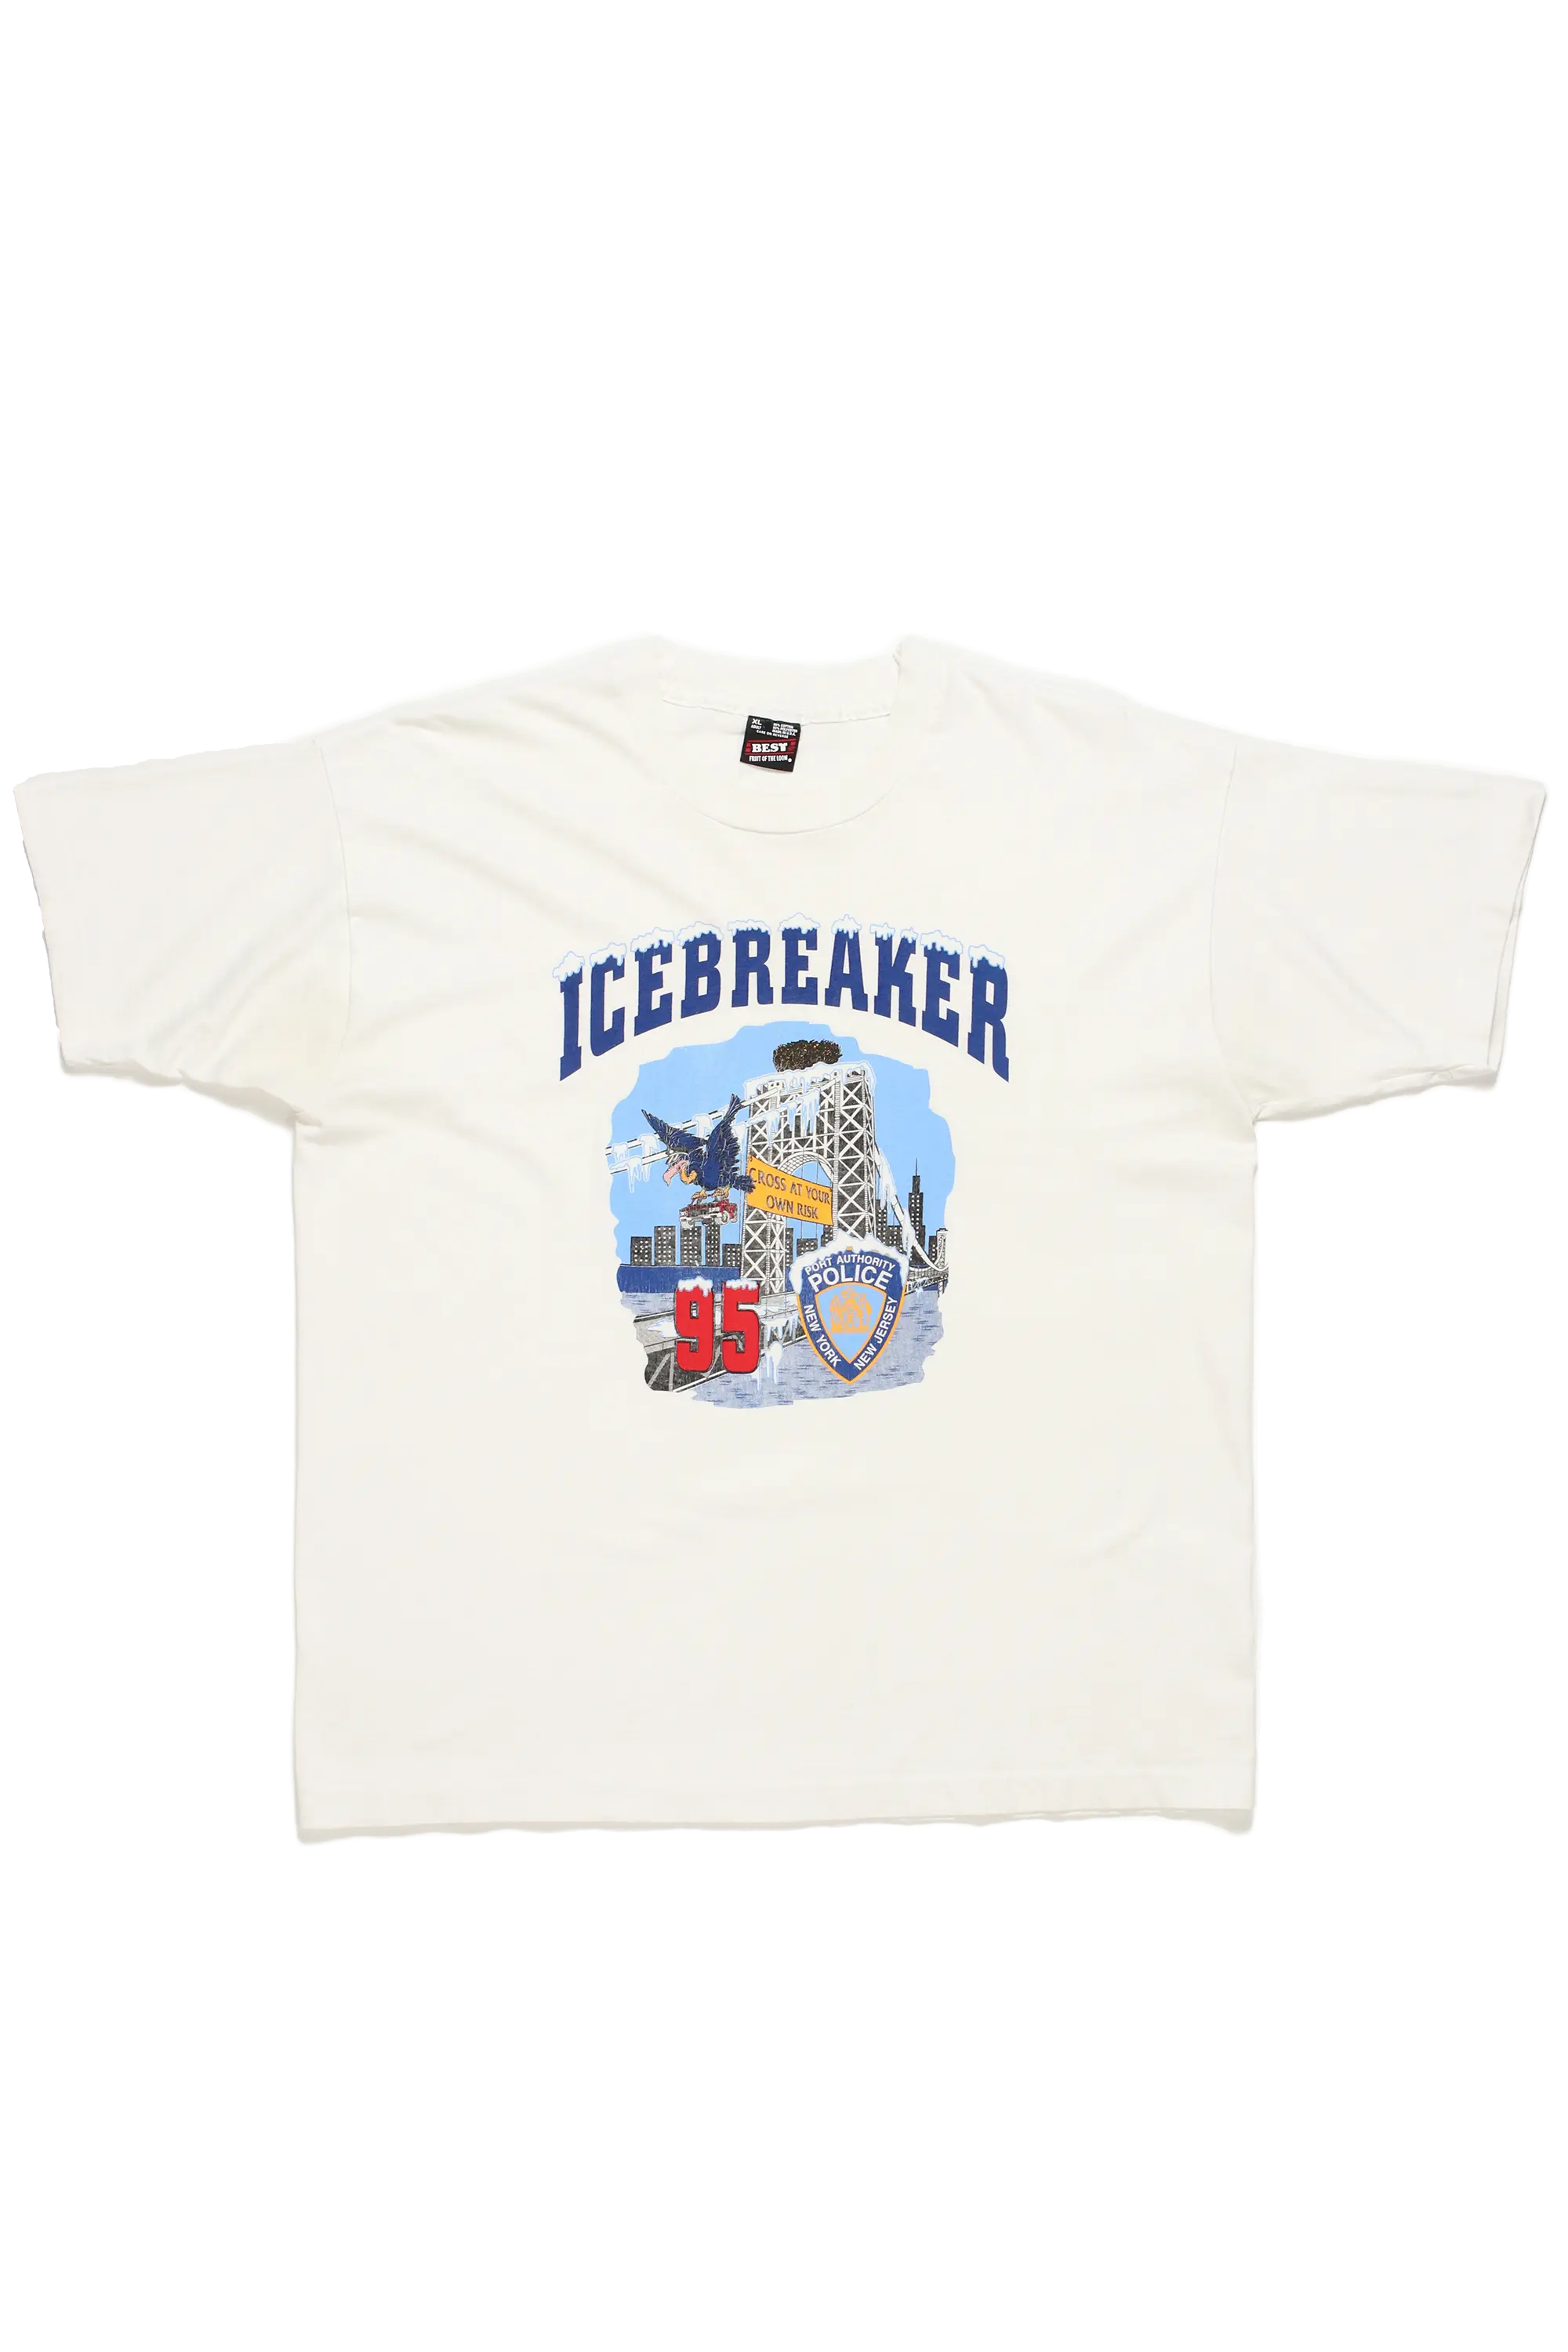 Icebreaker Police T-Shirt